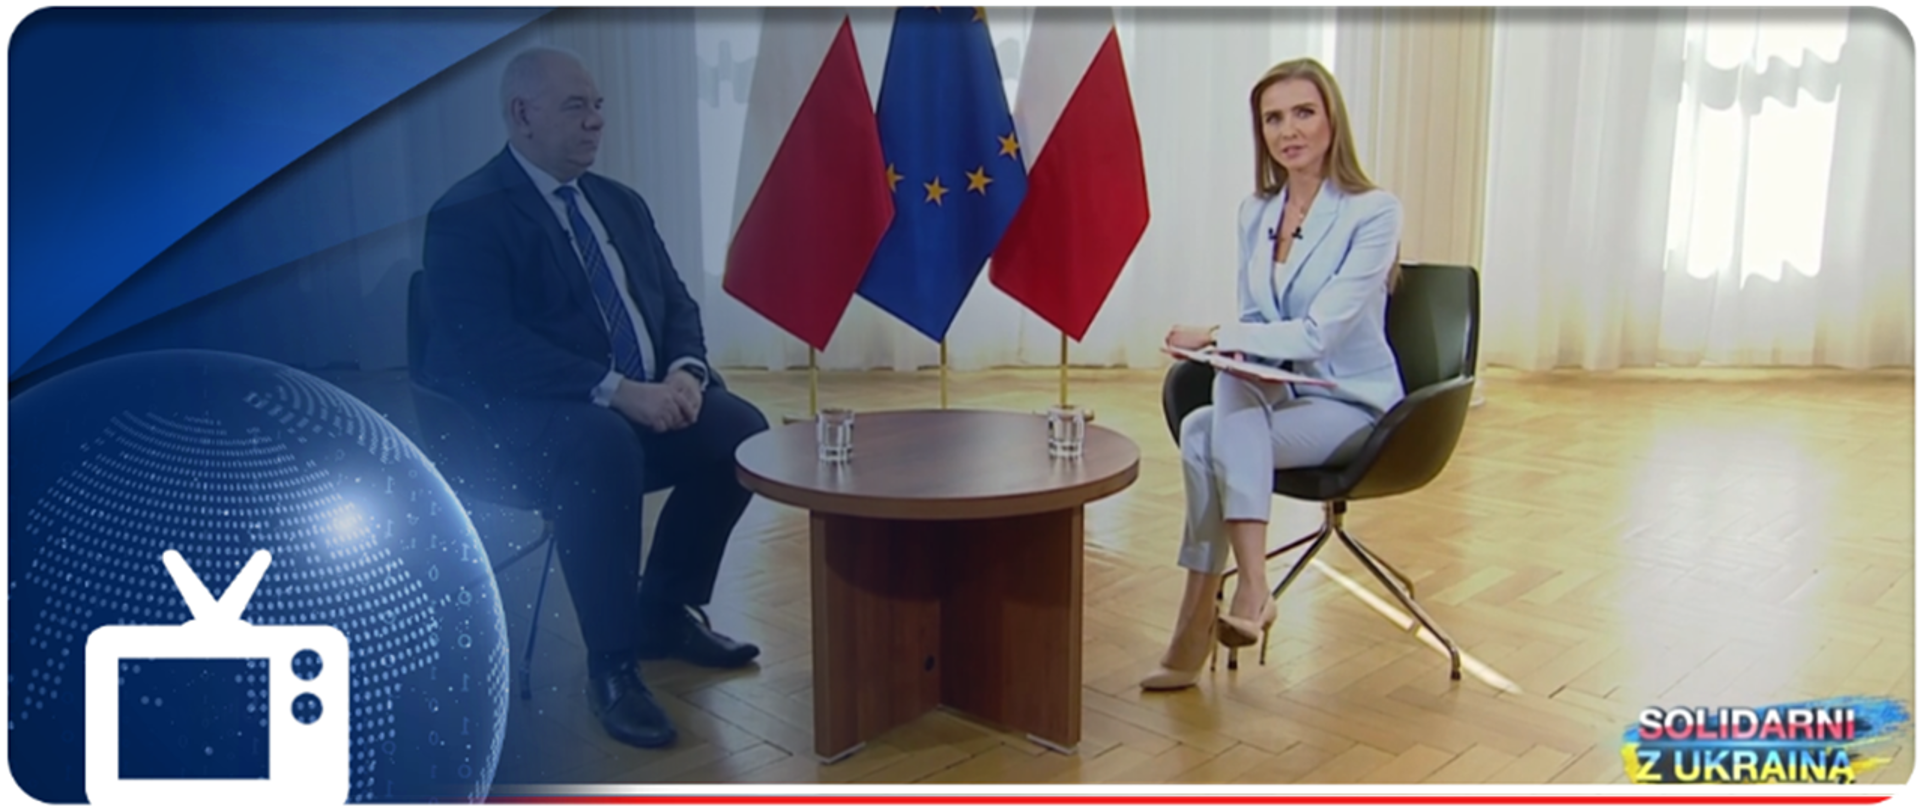 Z lewej strony wicepremier Jacek Sasin, z prawej strony redaktor Ewa Bugała, w środku stolik, w tle flagi. W lewym dolnym rogu ikonka telewizora. 